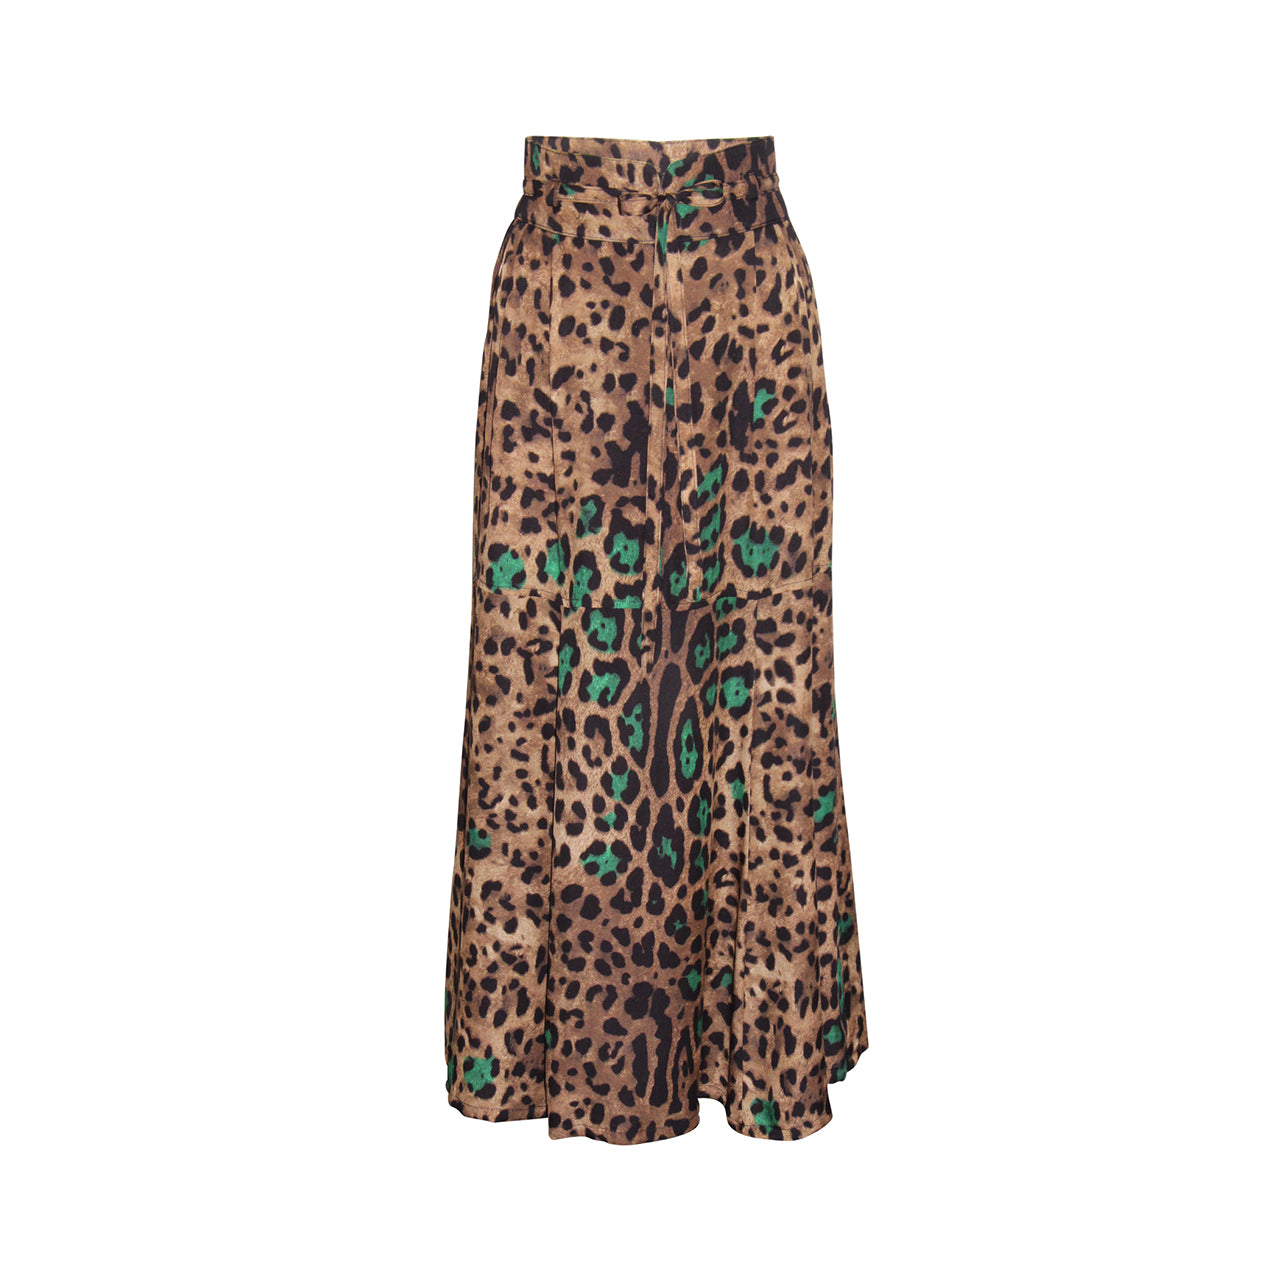 Shop the Stylish LORNA Leopard Print Midi Silk Skirt